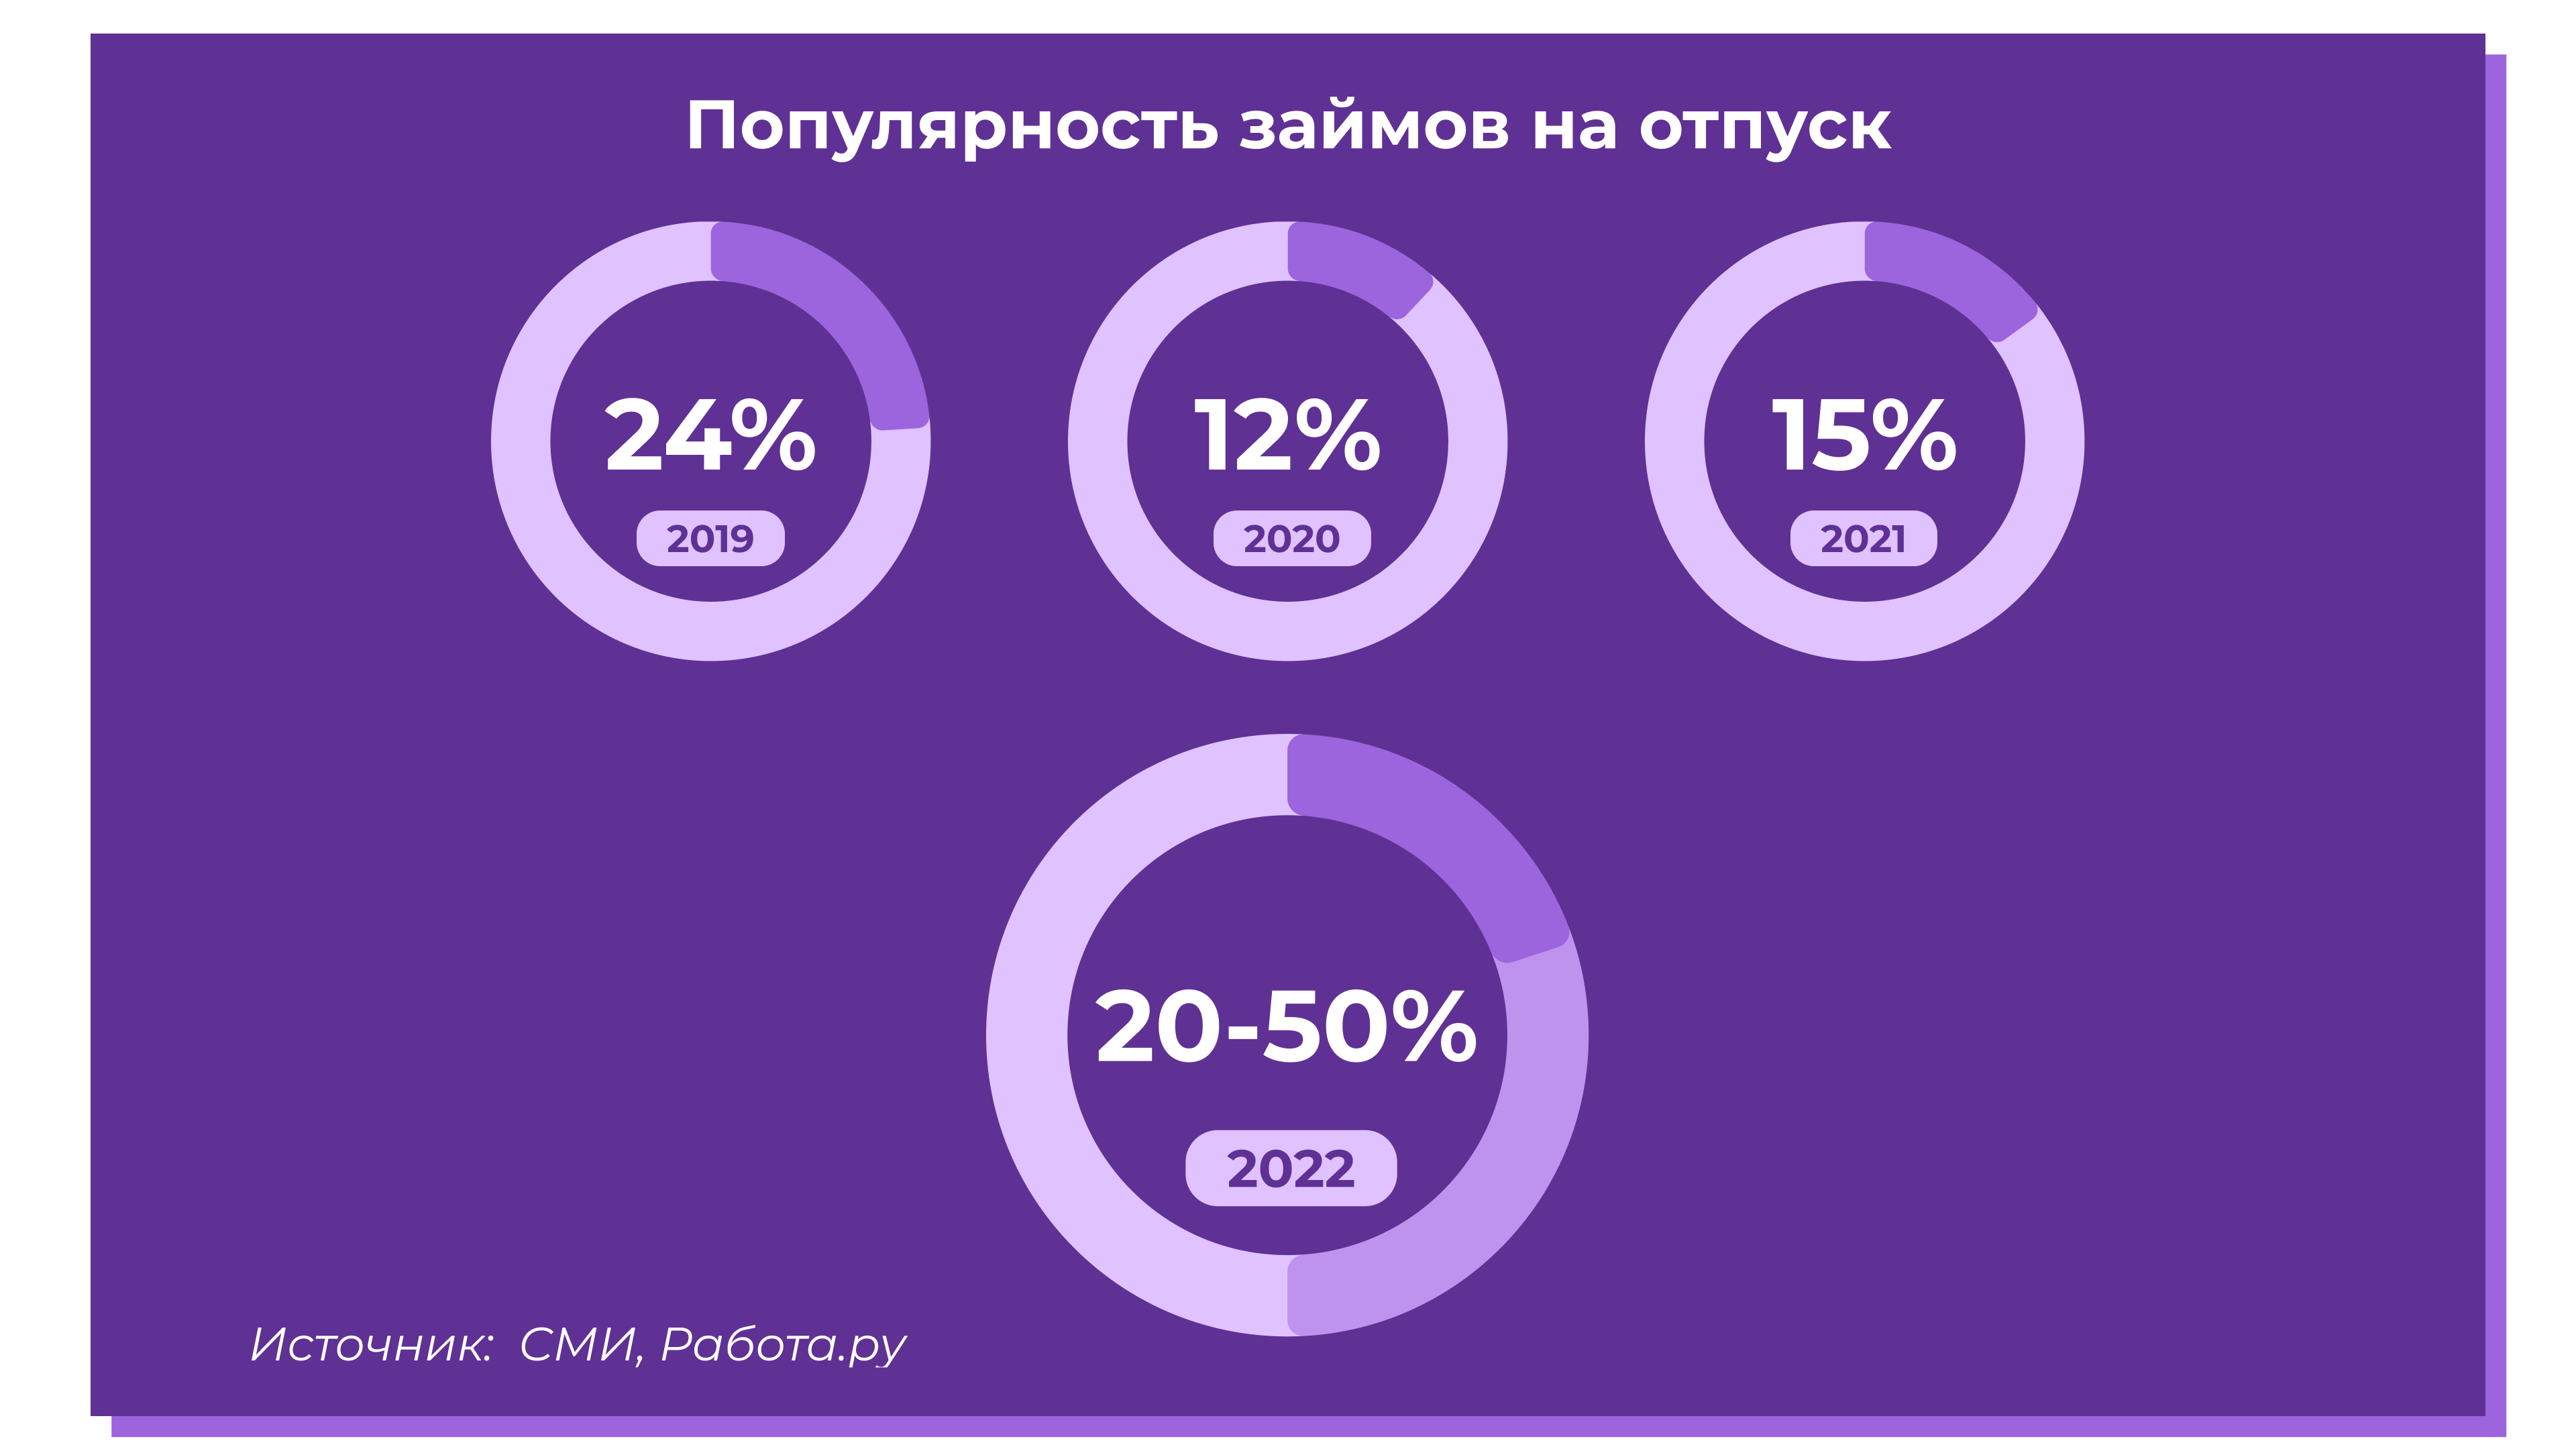 Инфографика: популярность займов на отпуск. Источники: СМИ, Работа.ру.